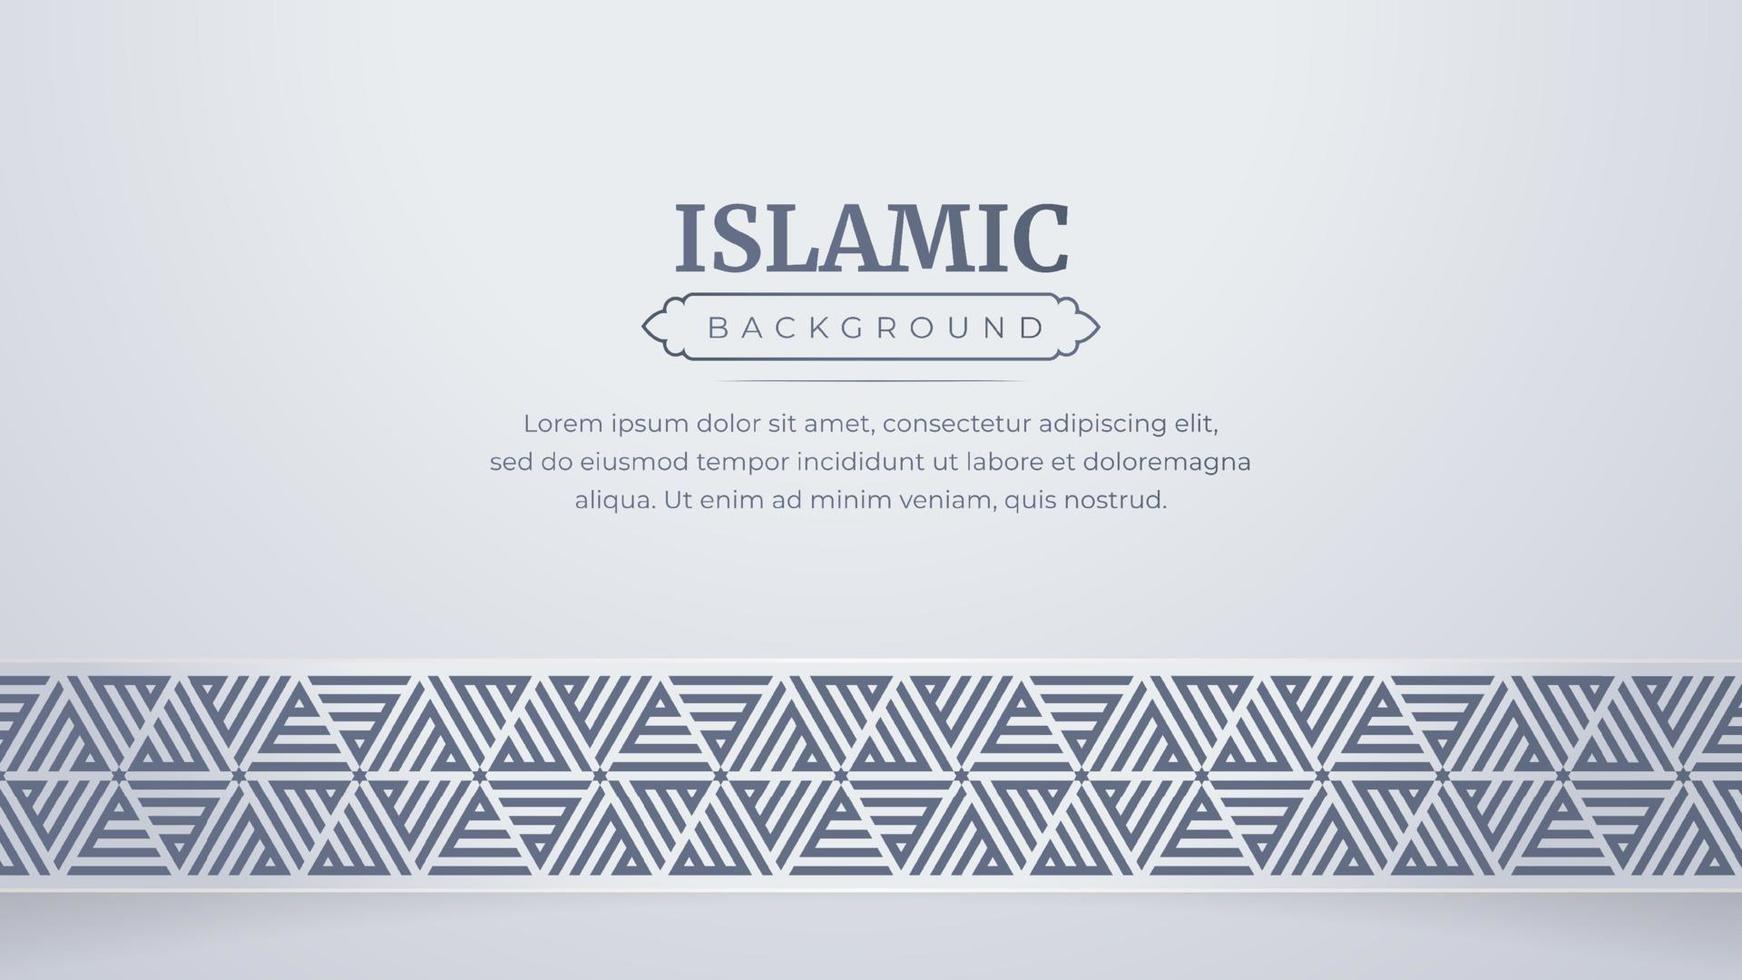 Islamitisch Arabisch stijl luxe elegant grens ornament achtergrond met kopiëren ruimte vector